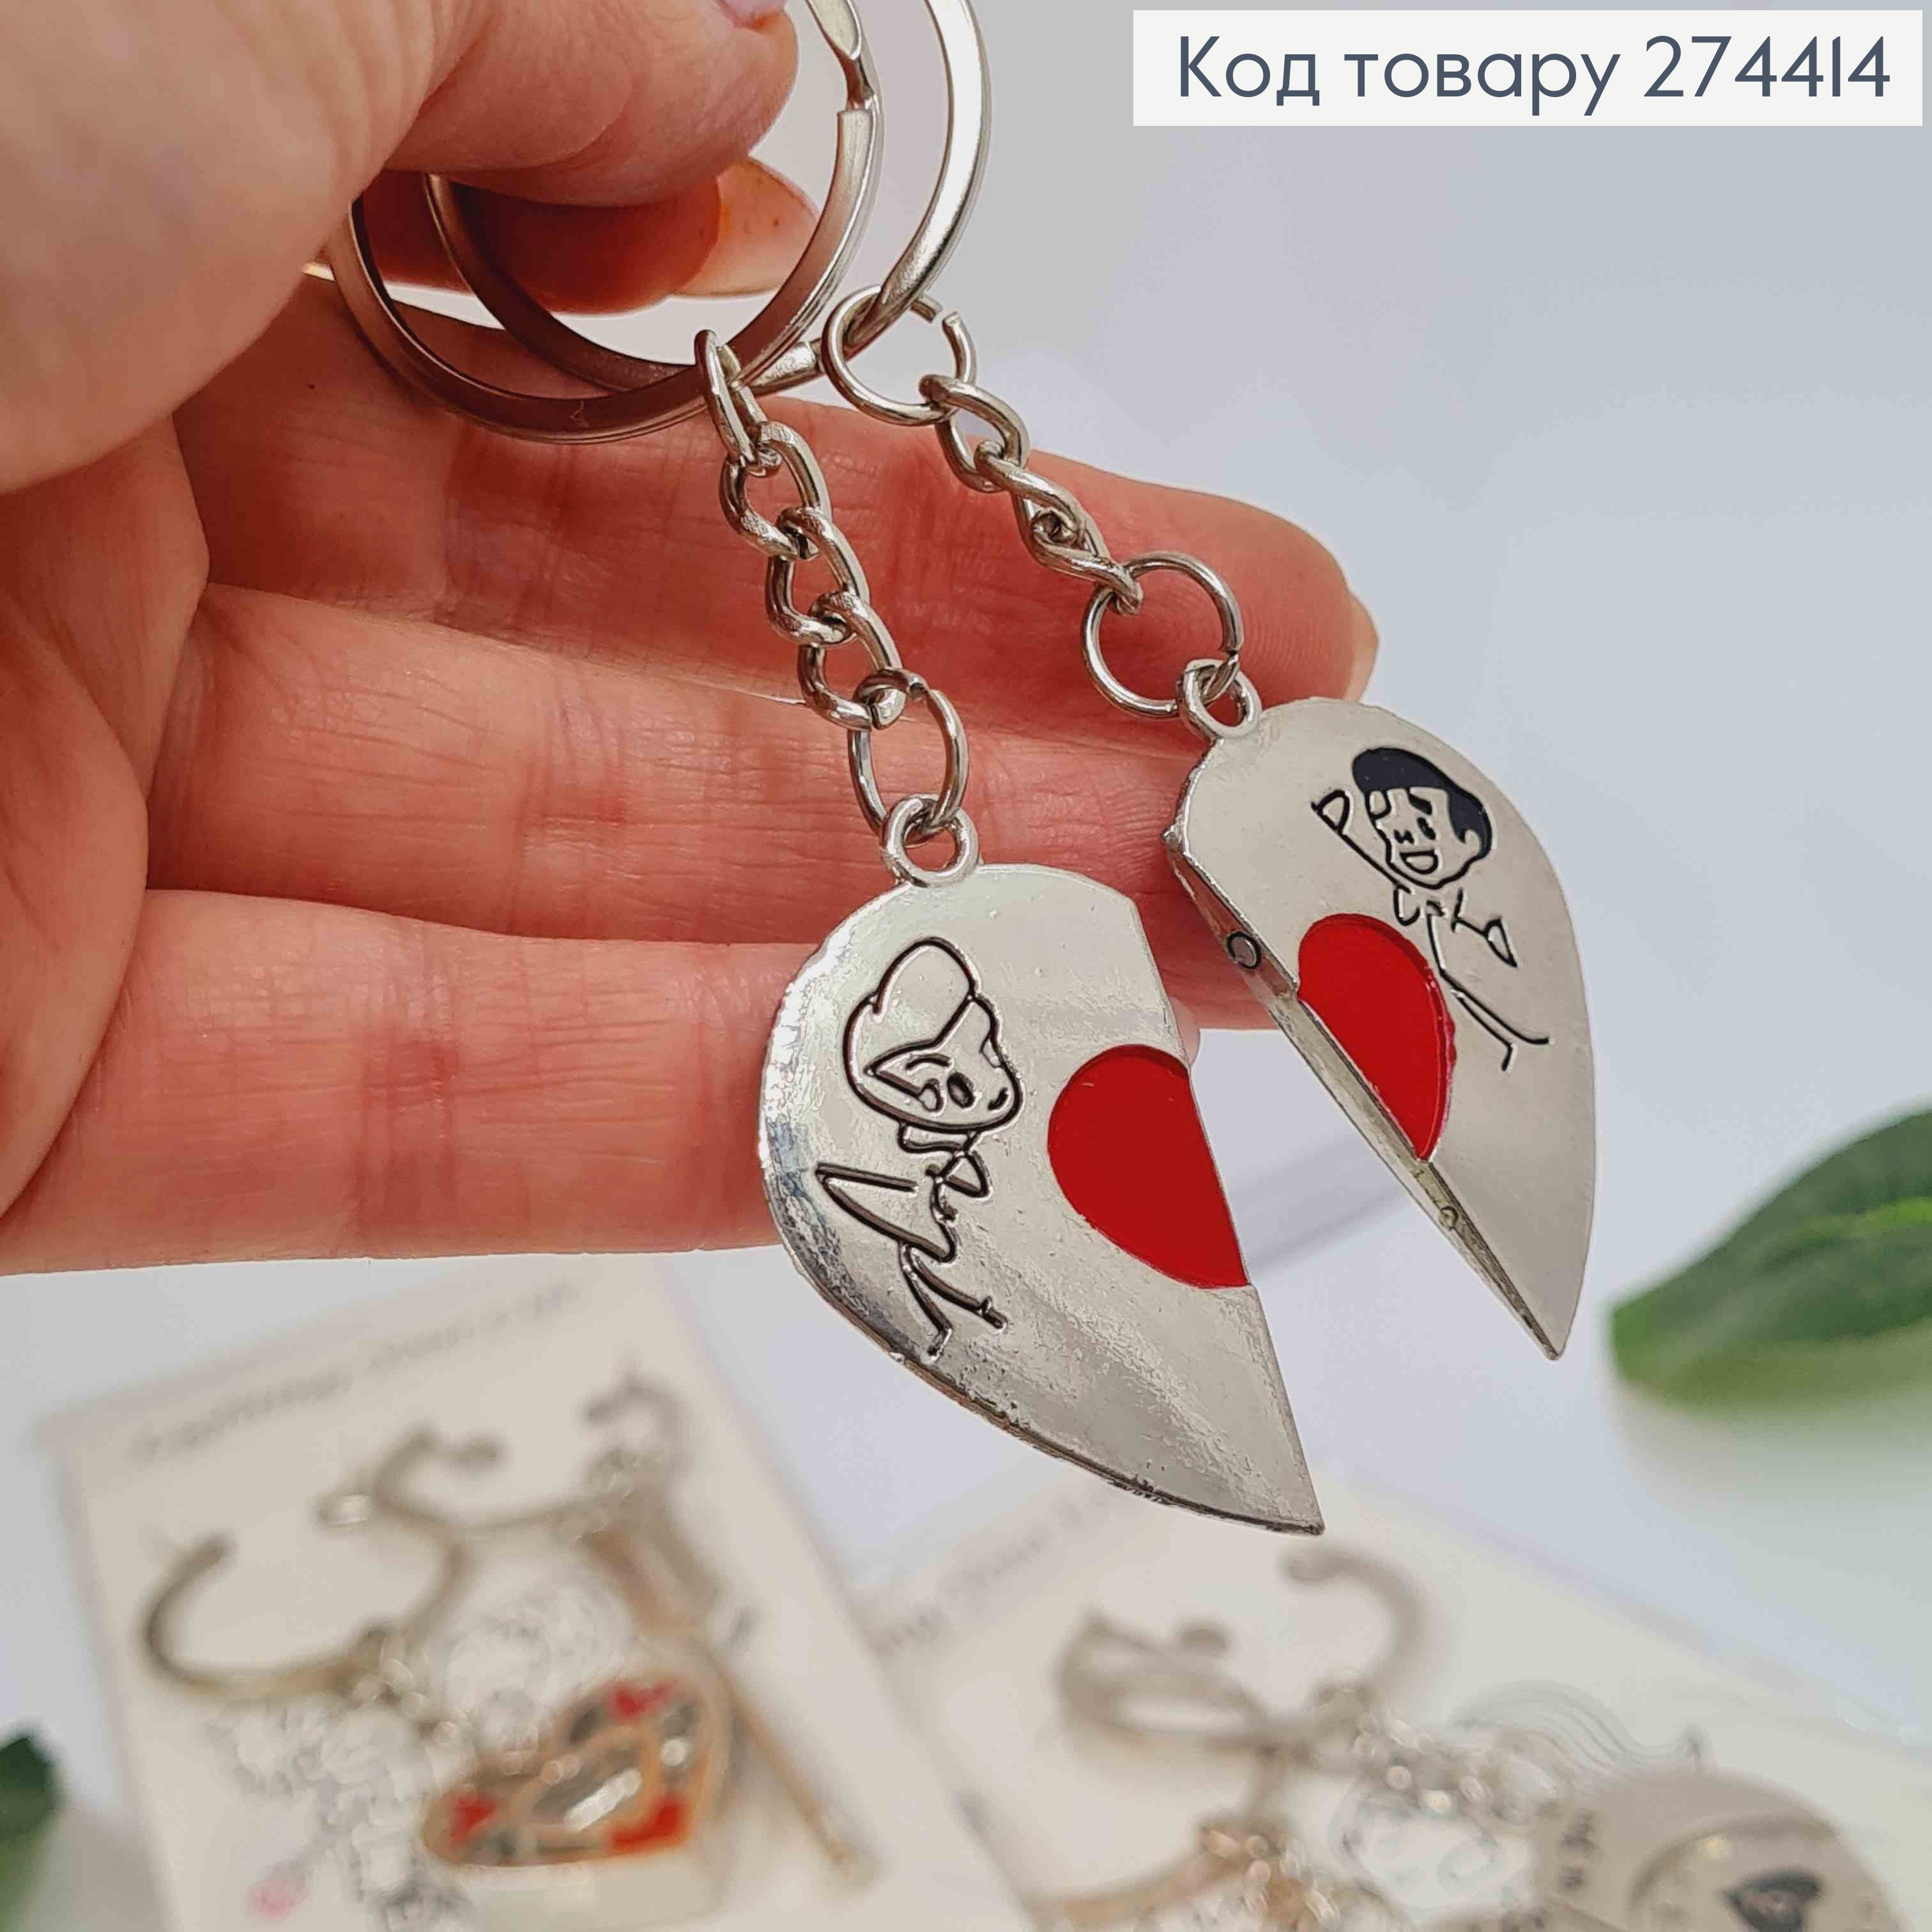 Парні брелки, з Сердечками, метал срібного кольору 274414 фото 2